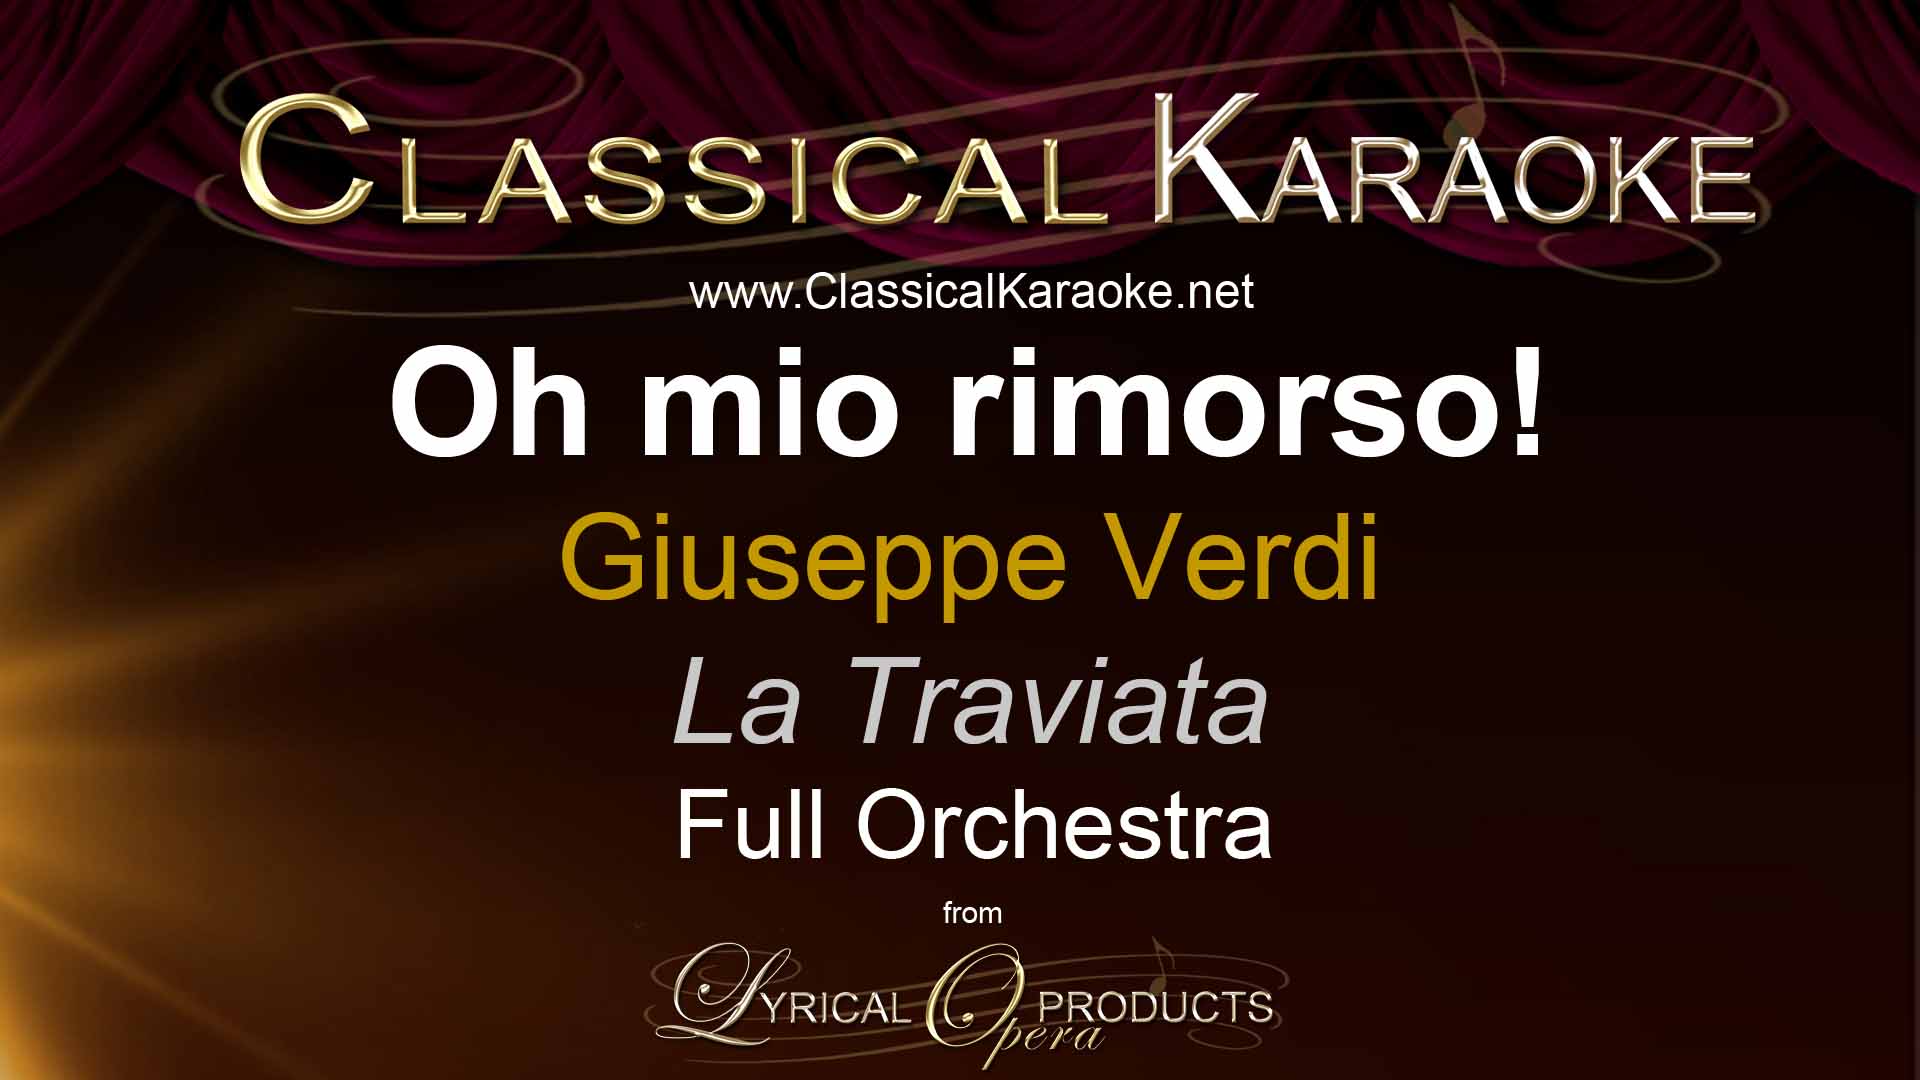 Oh mio rimorso!, from La Traviata, by Verdi, Full Orchestral Accompaniment (karaoke) track